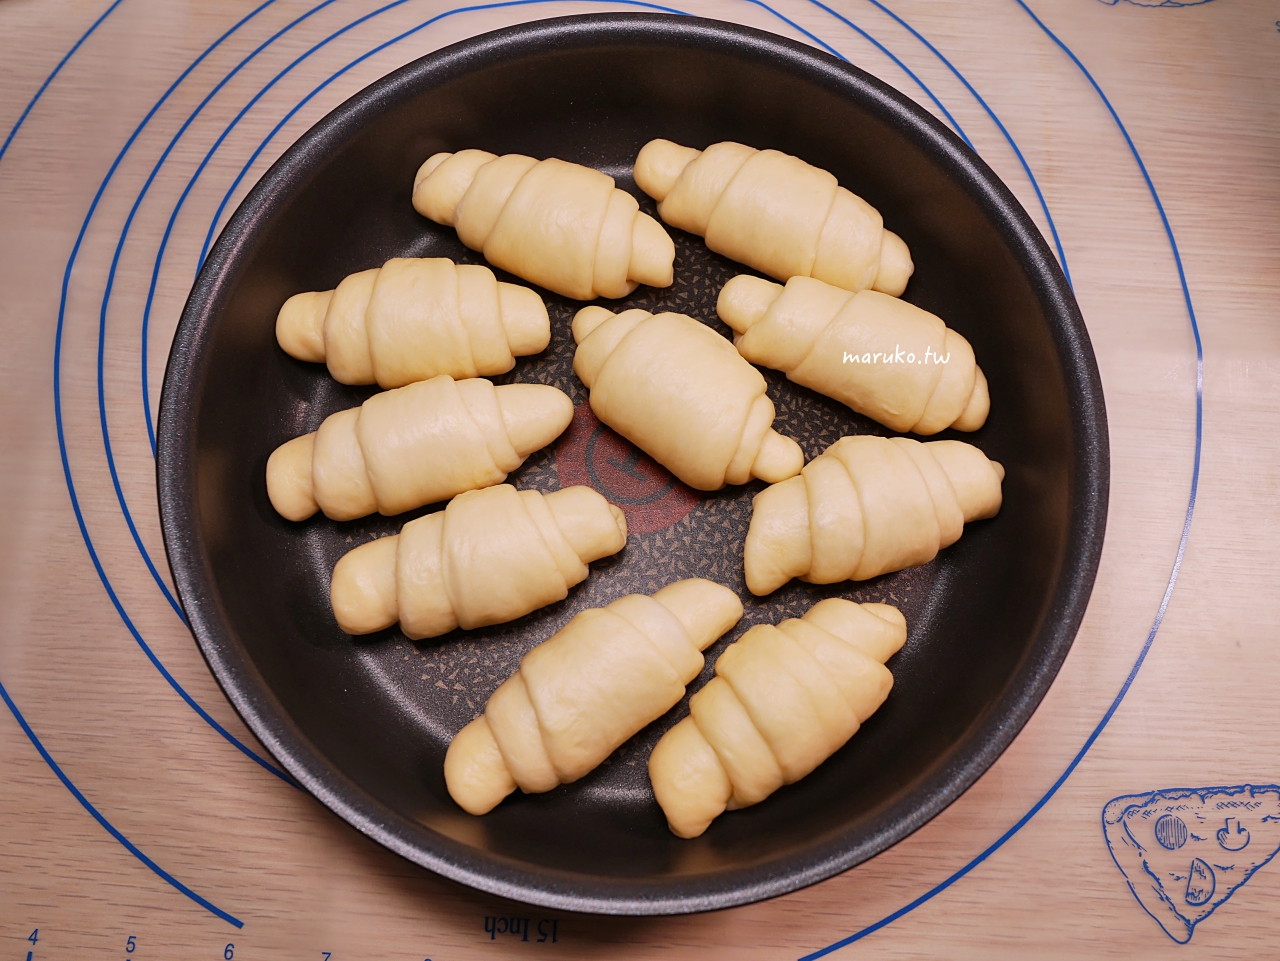 【食譜】日本 Twinbird 多功能製麵包機推薦 基本麵團脆皮奶油捲麵包實作分享 @Maruko與美食有個約會